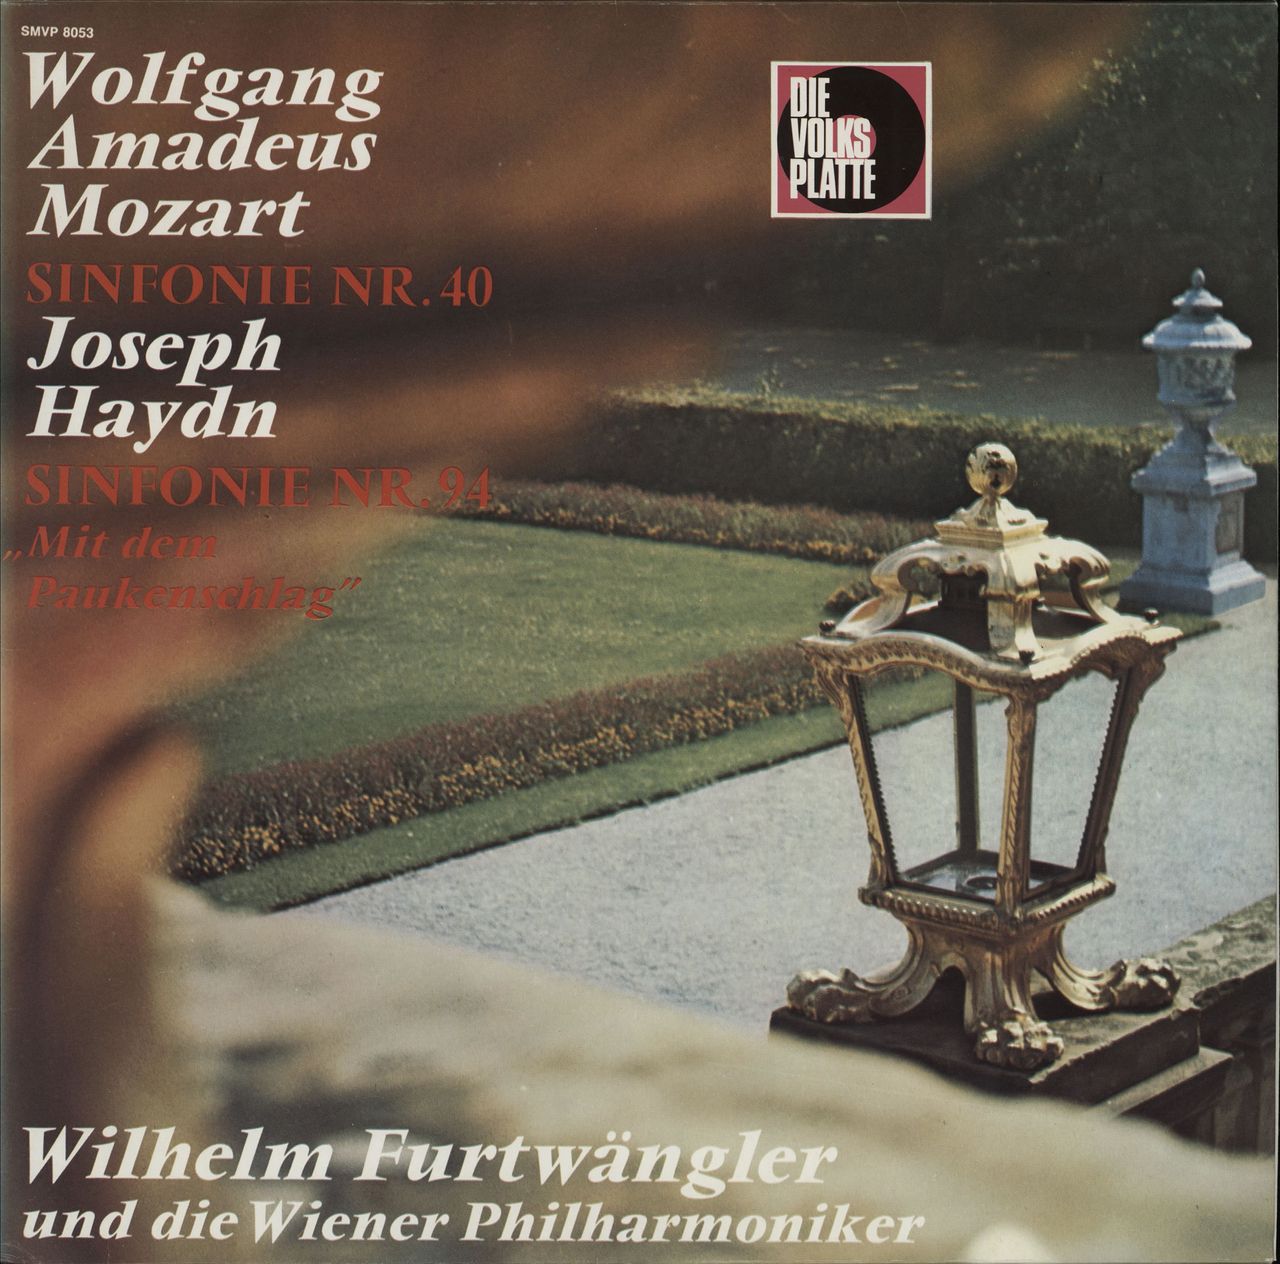 Vienna Philharmonic Orchestra Mozart: Sinfonie Nr. 40 / Haydn: Sinfonie Nr. 94 "Mit Dem Paukenschlag" German vinyl LP album (LP record) SMVP8053